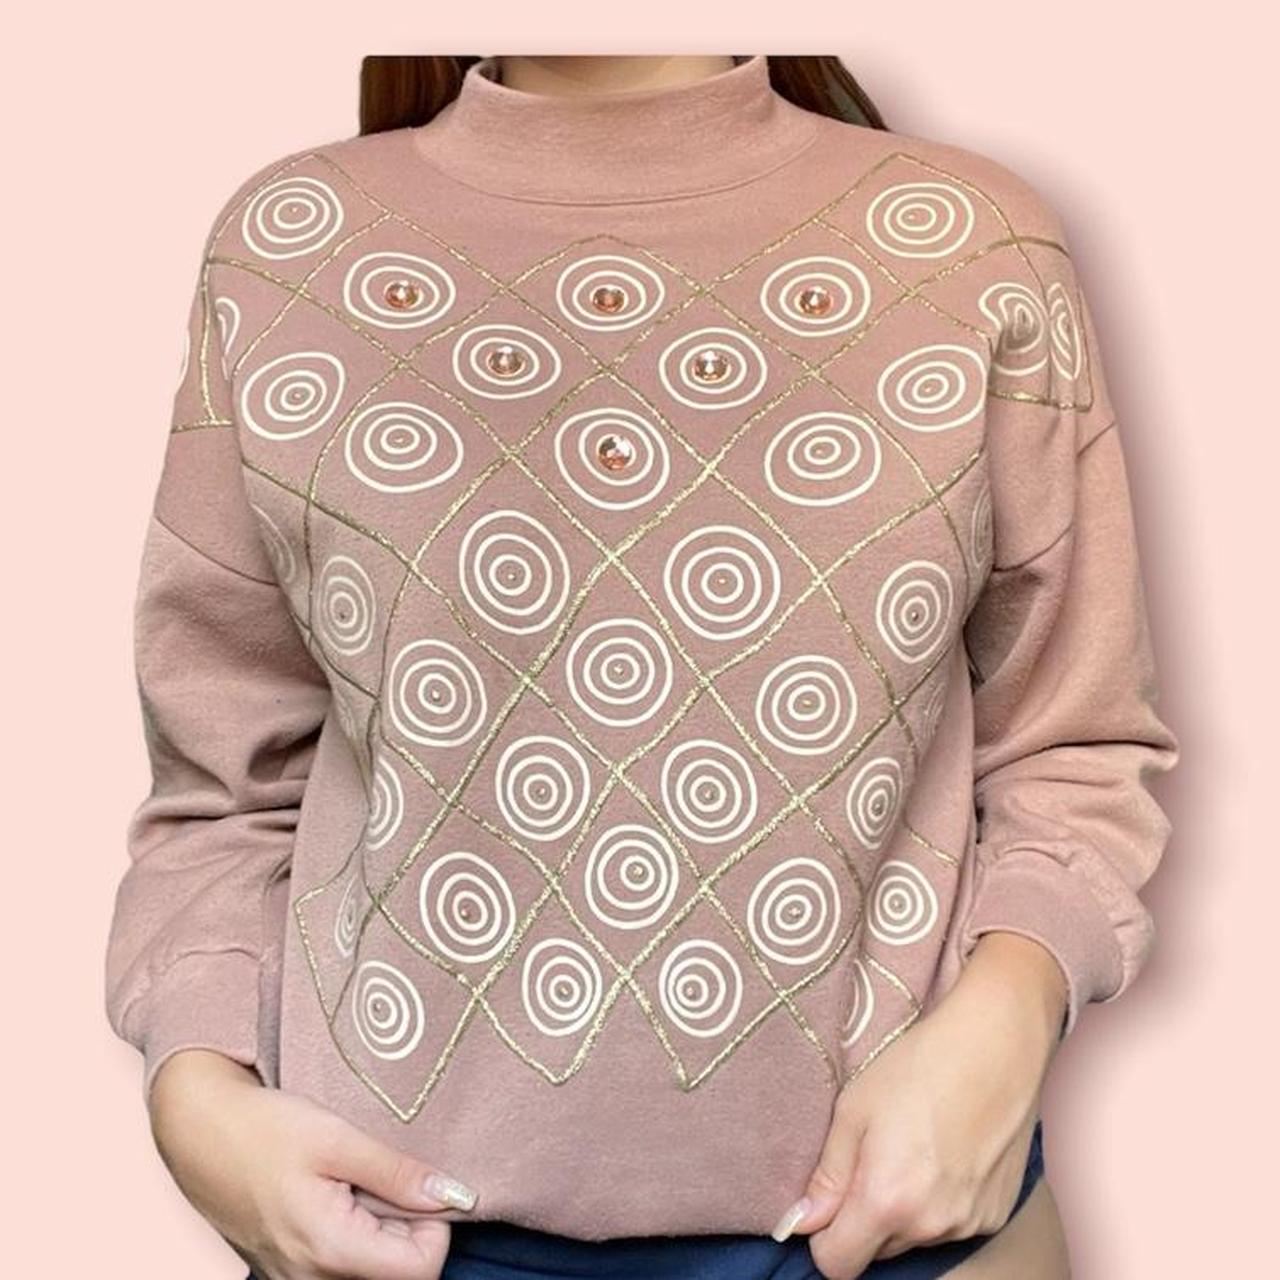 Product Image 1 - VINTAGE TURTLENECK SWEATSHIRT💞 This sweatshirt